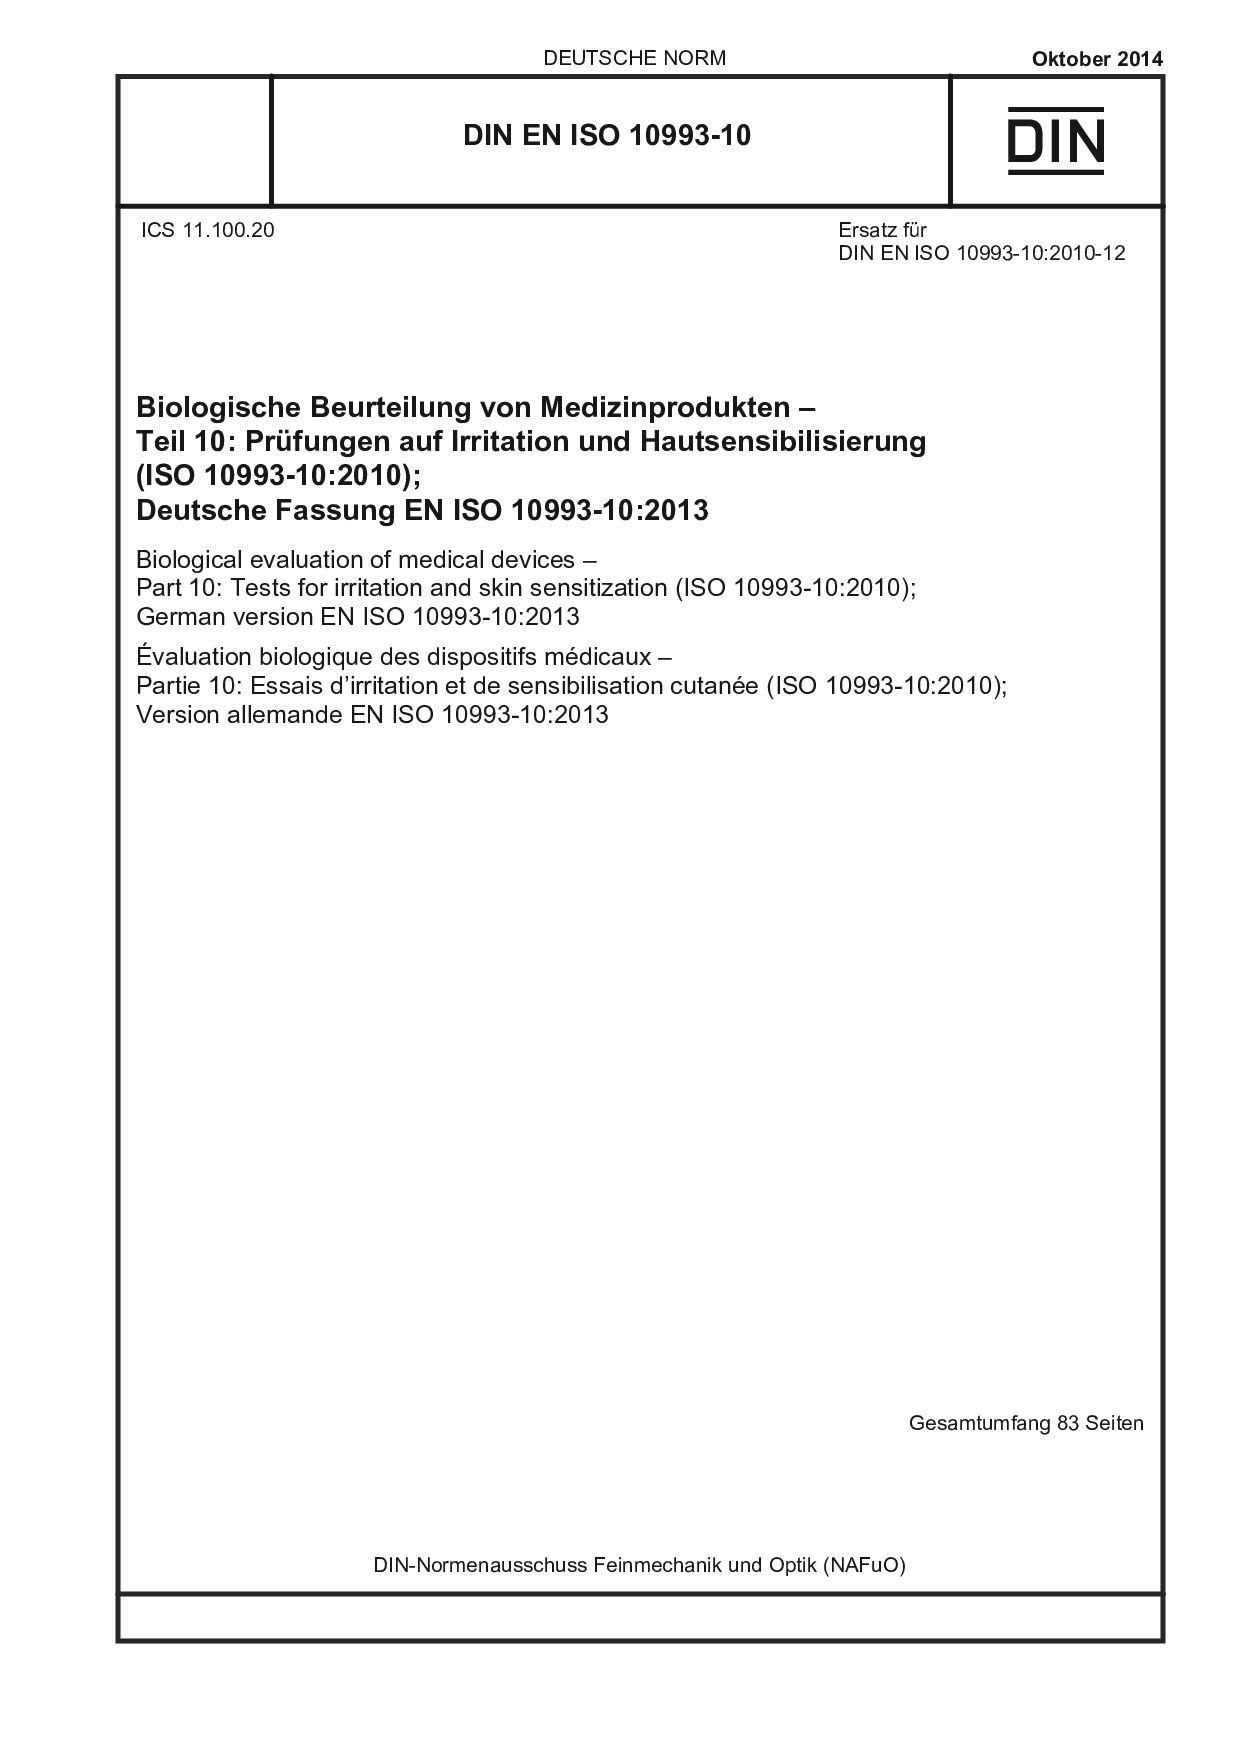 DIN EN ISO 10993-10:2014